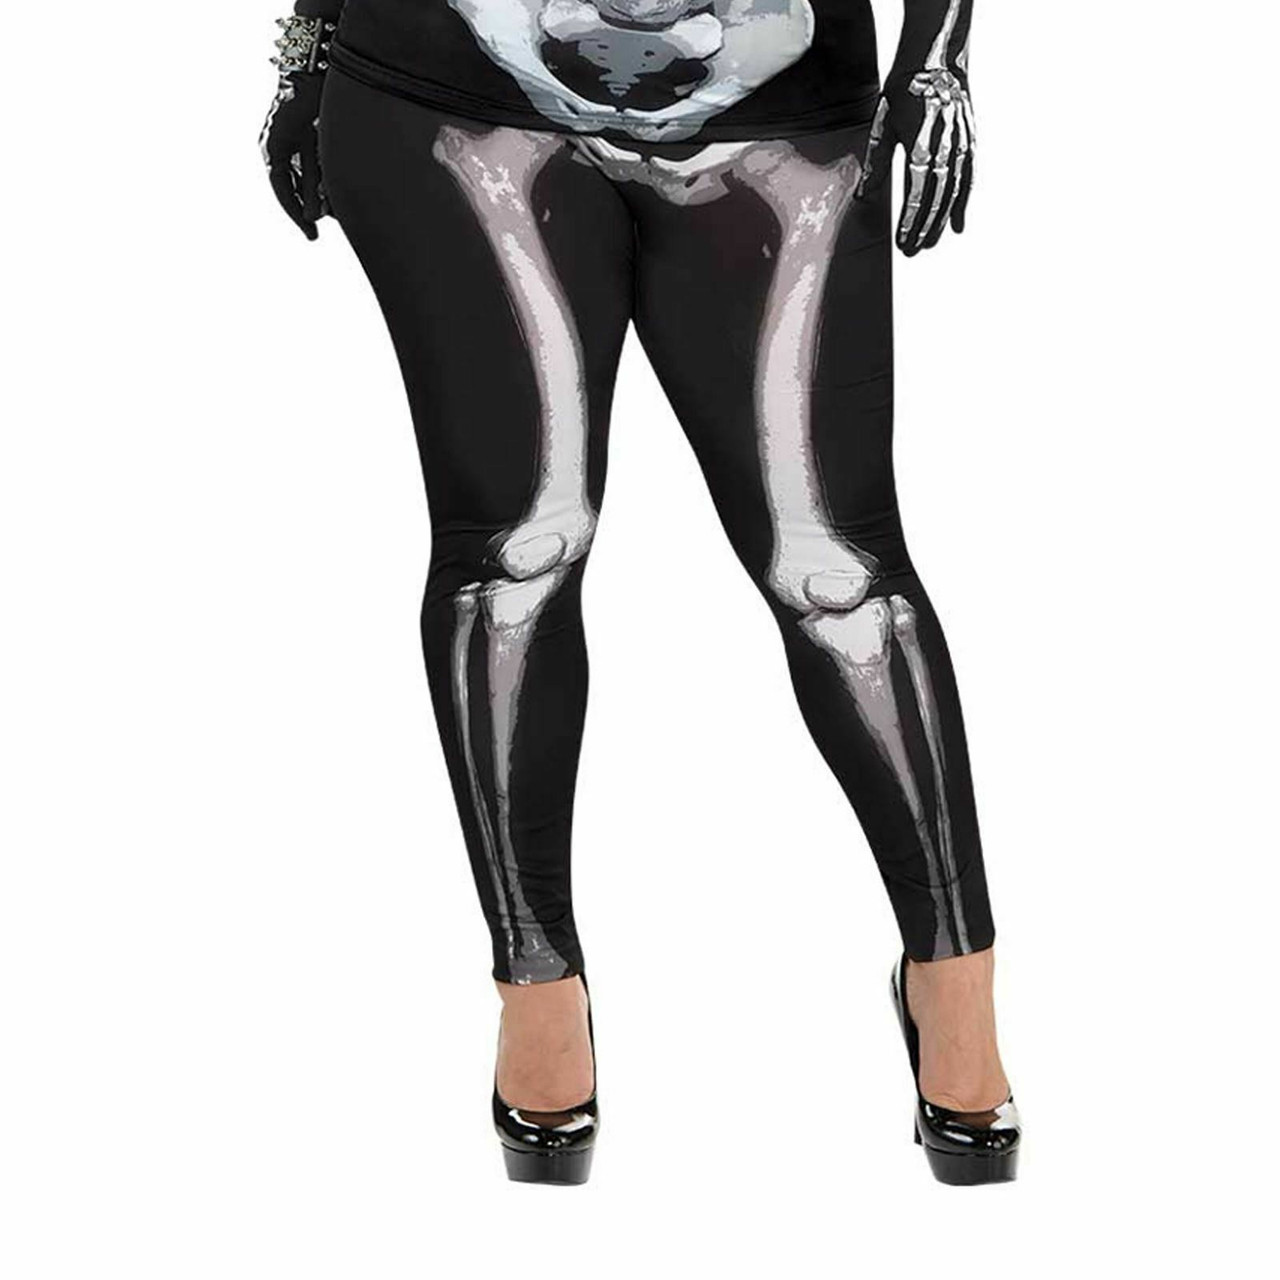 Ladies Black & Bones Skeleton Leggings - Plus Size - Fancy Dress VIP